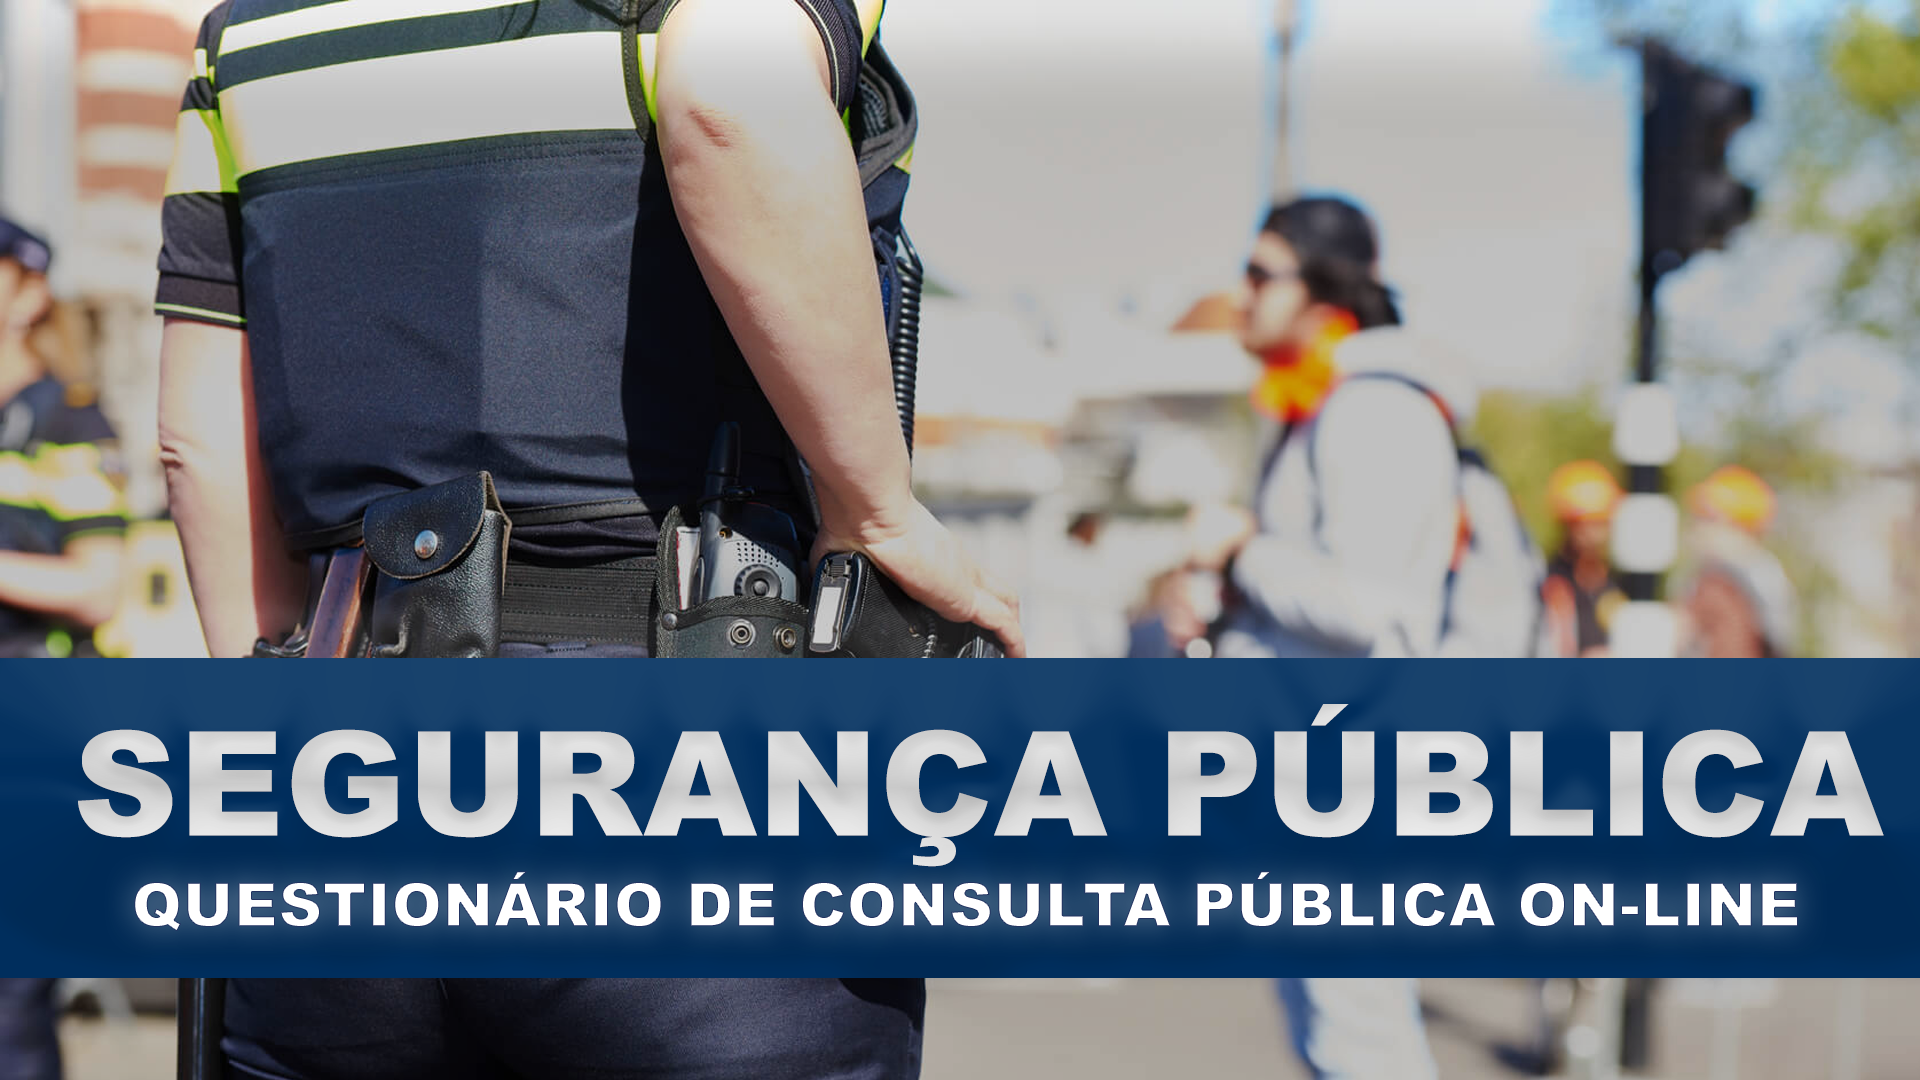 Questionário de Consulta Pública on-line